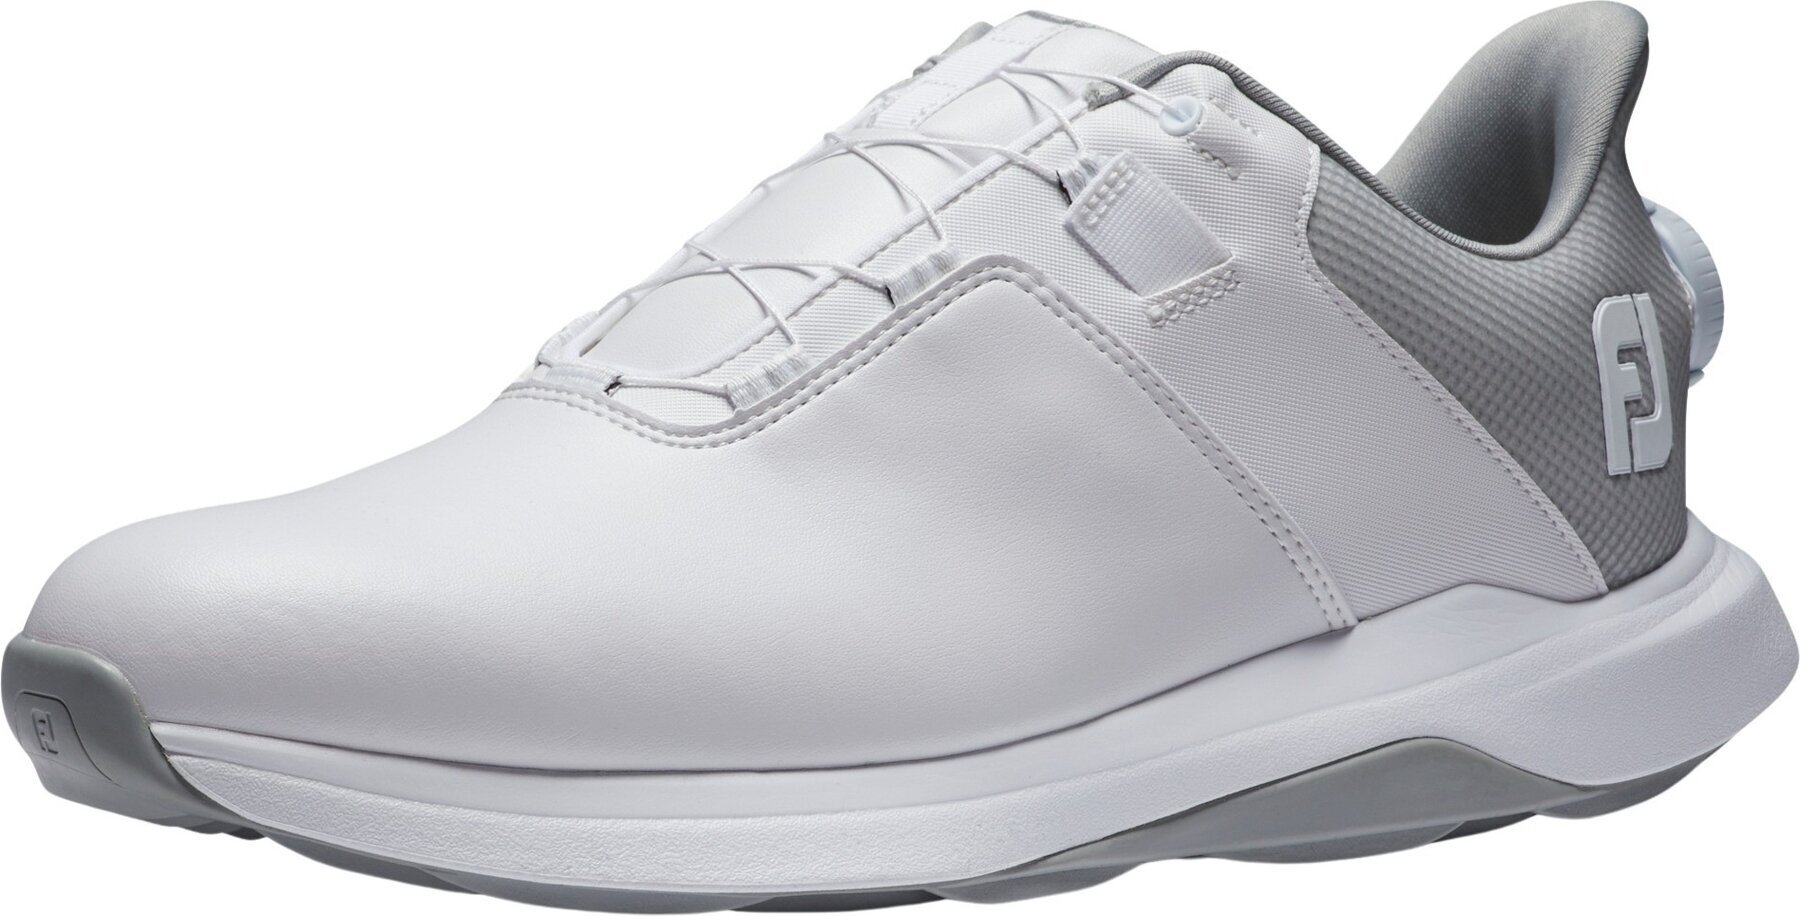 Chaussures de golf pour hommes Footjoy ProLite Mens Golf Shoes White/White/Grey 40,5